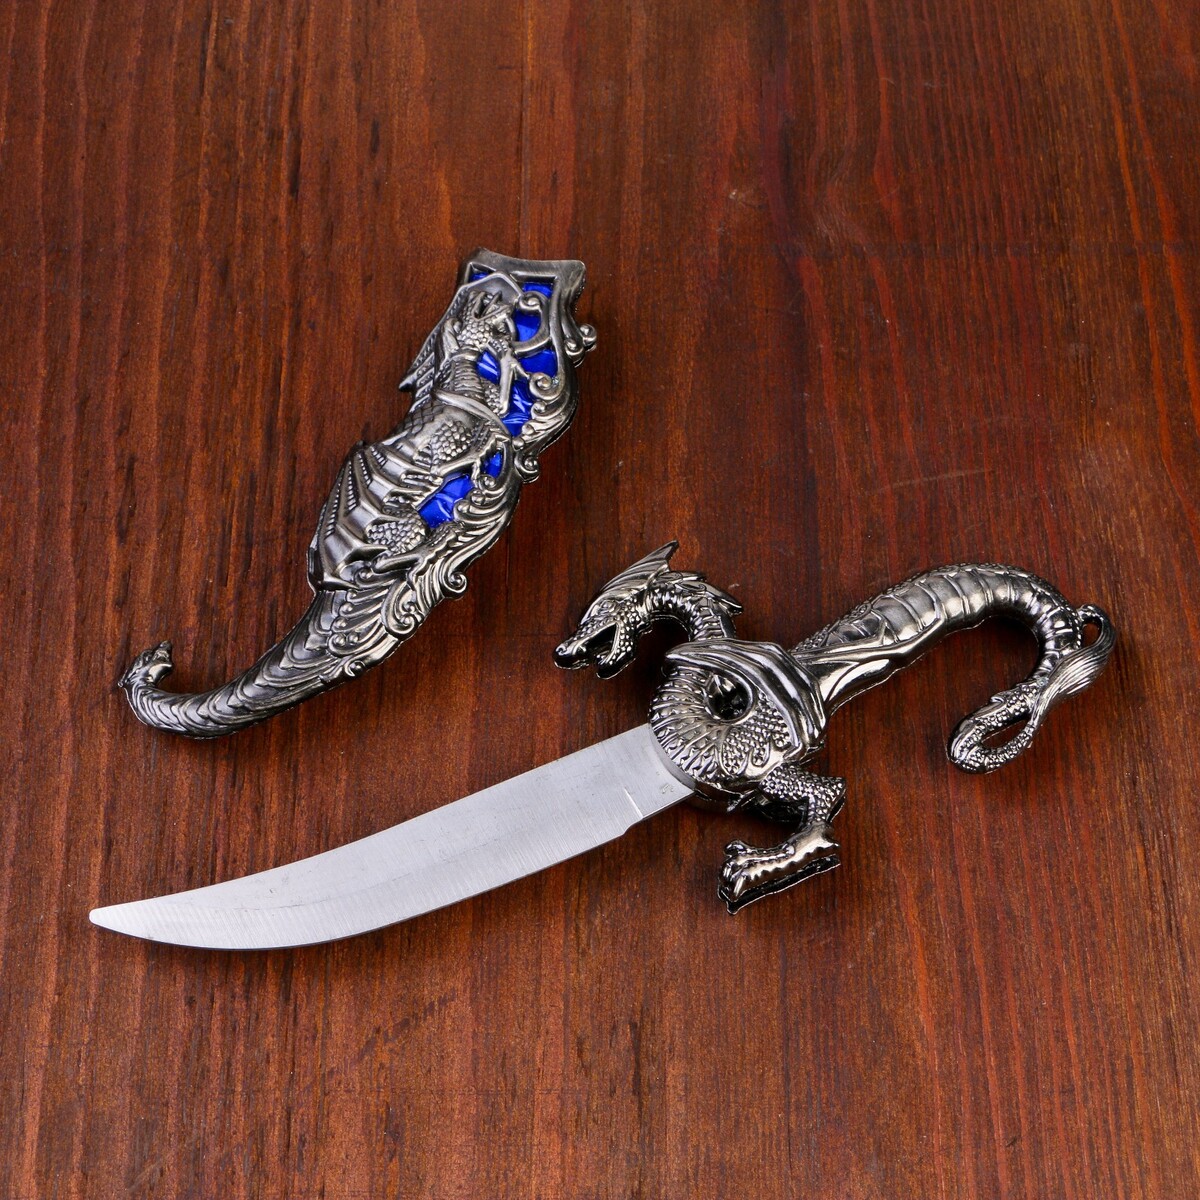 Сувенирный нож, 24,5 см резные ножны, дракон на рукояти где же дракон